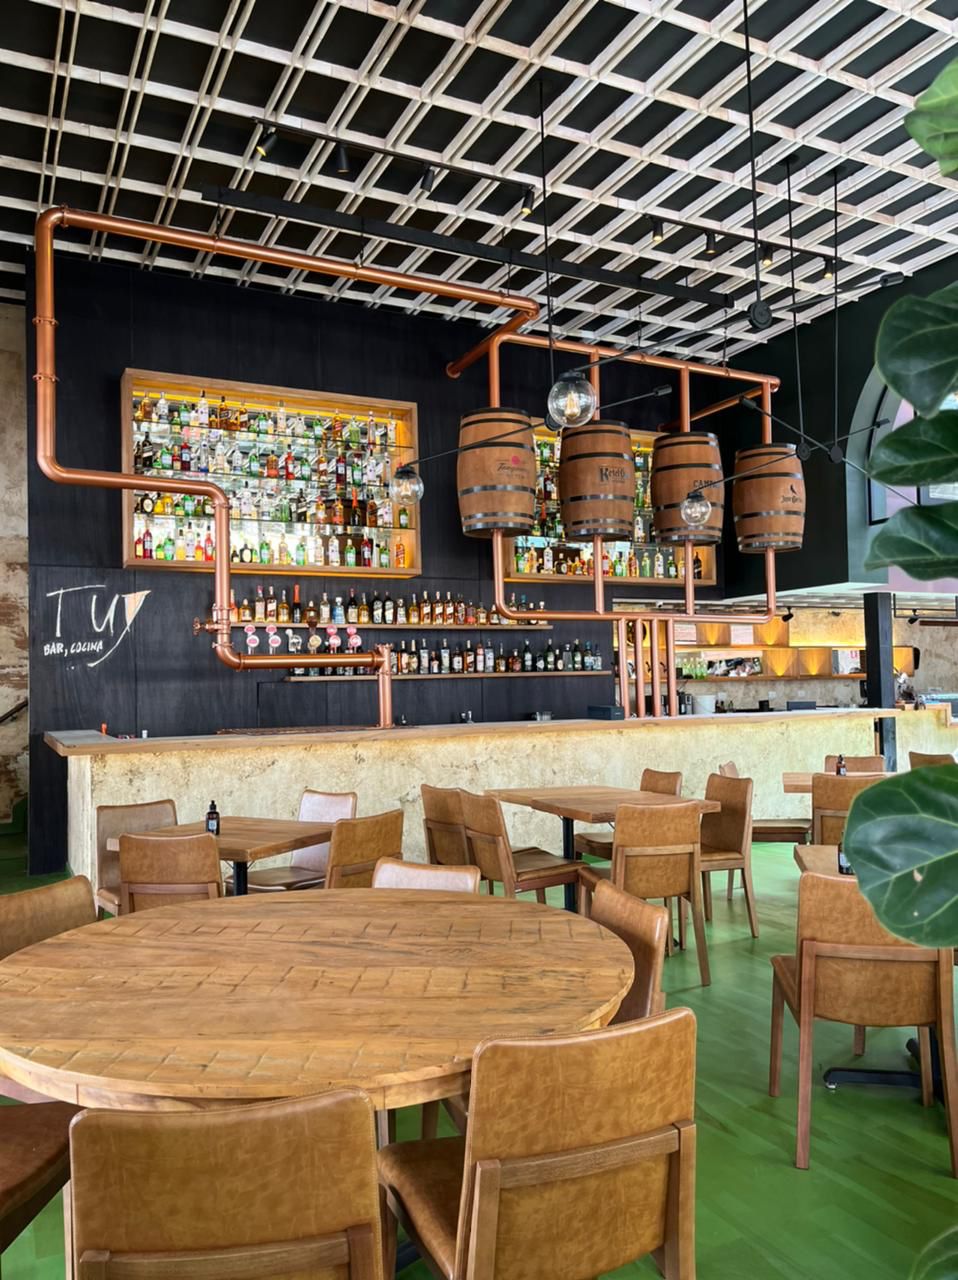 Ambiente de bar com garrafas expostas e barris de madeira como parte da decoração